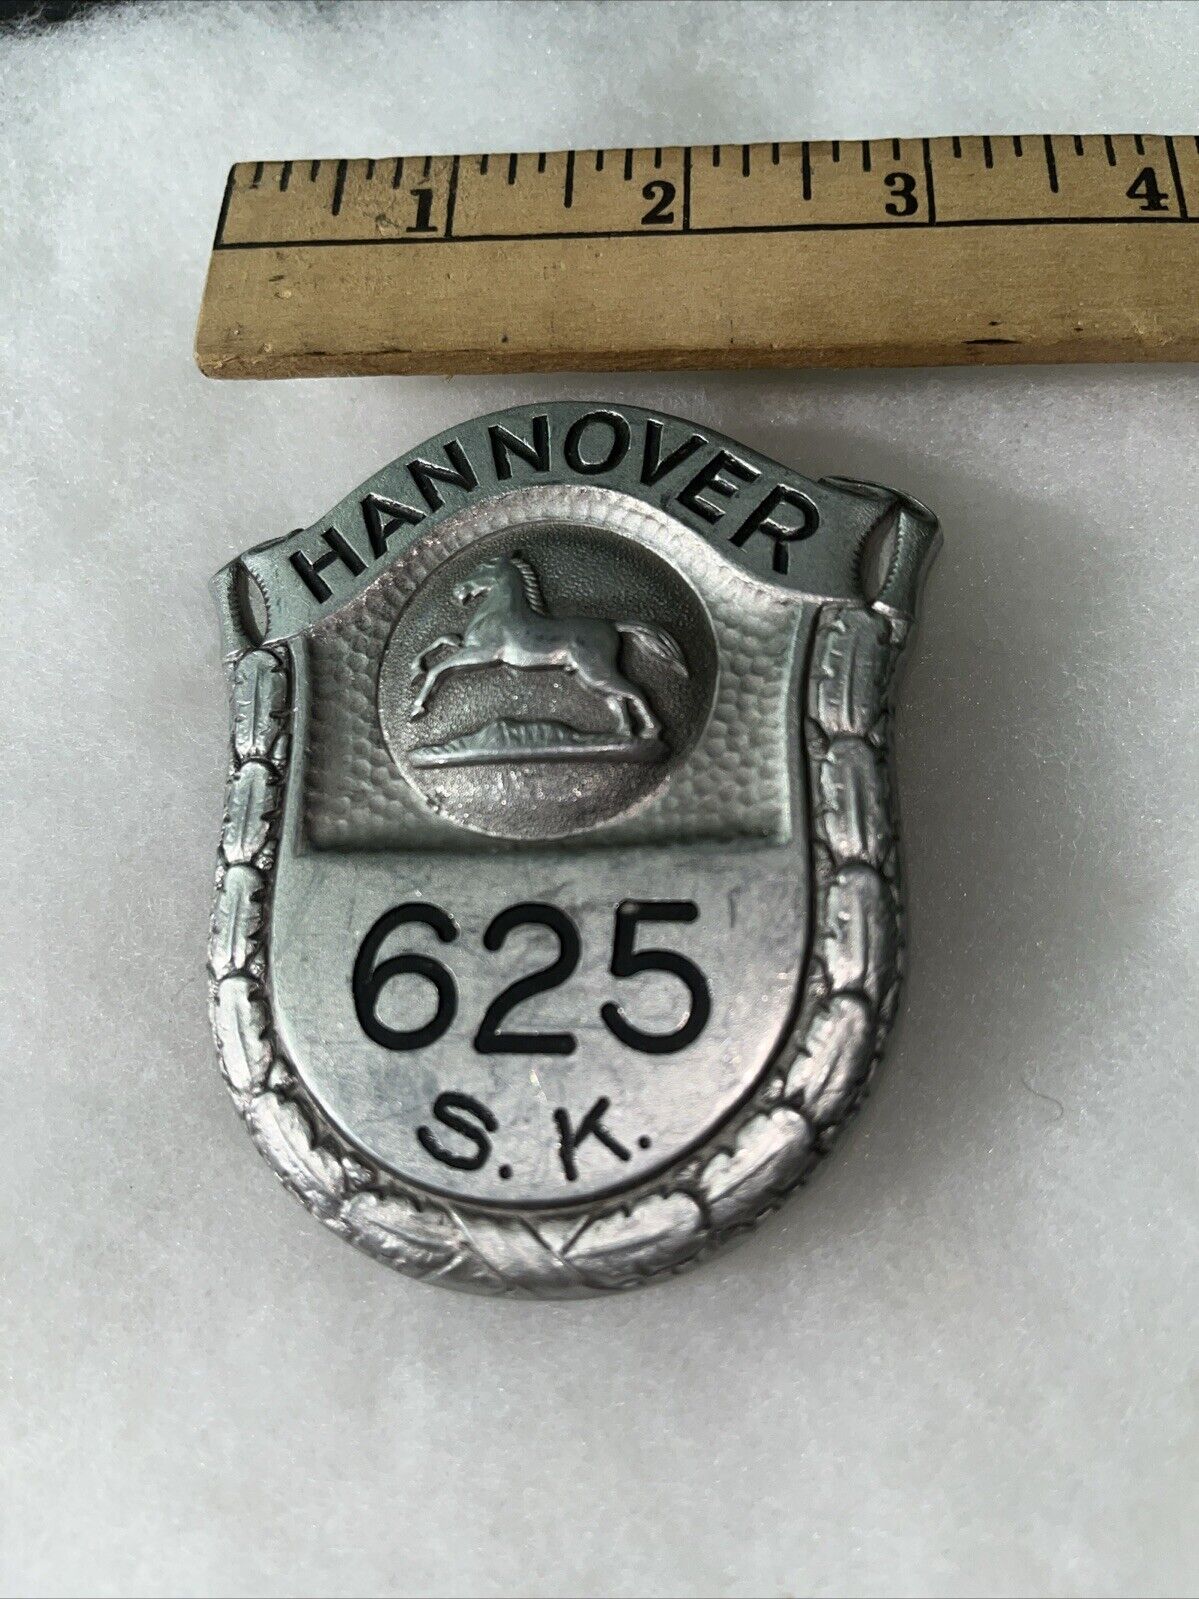 Vintage Antique German Hannover S.K. 625 Police Badge